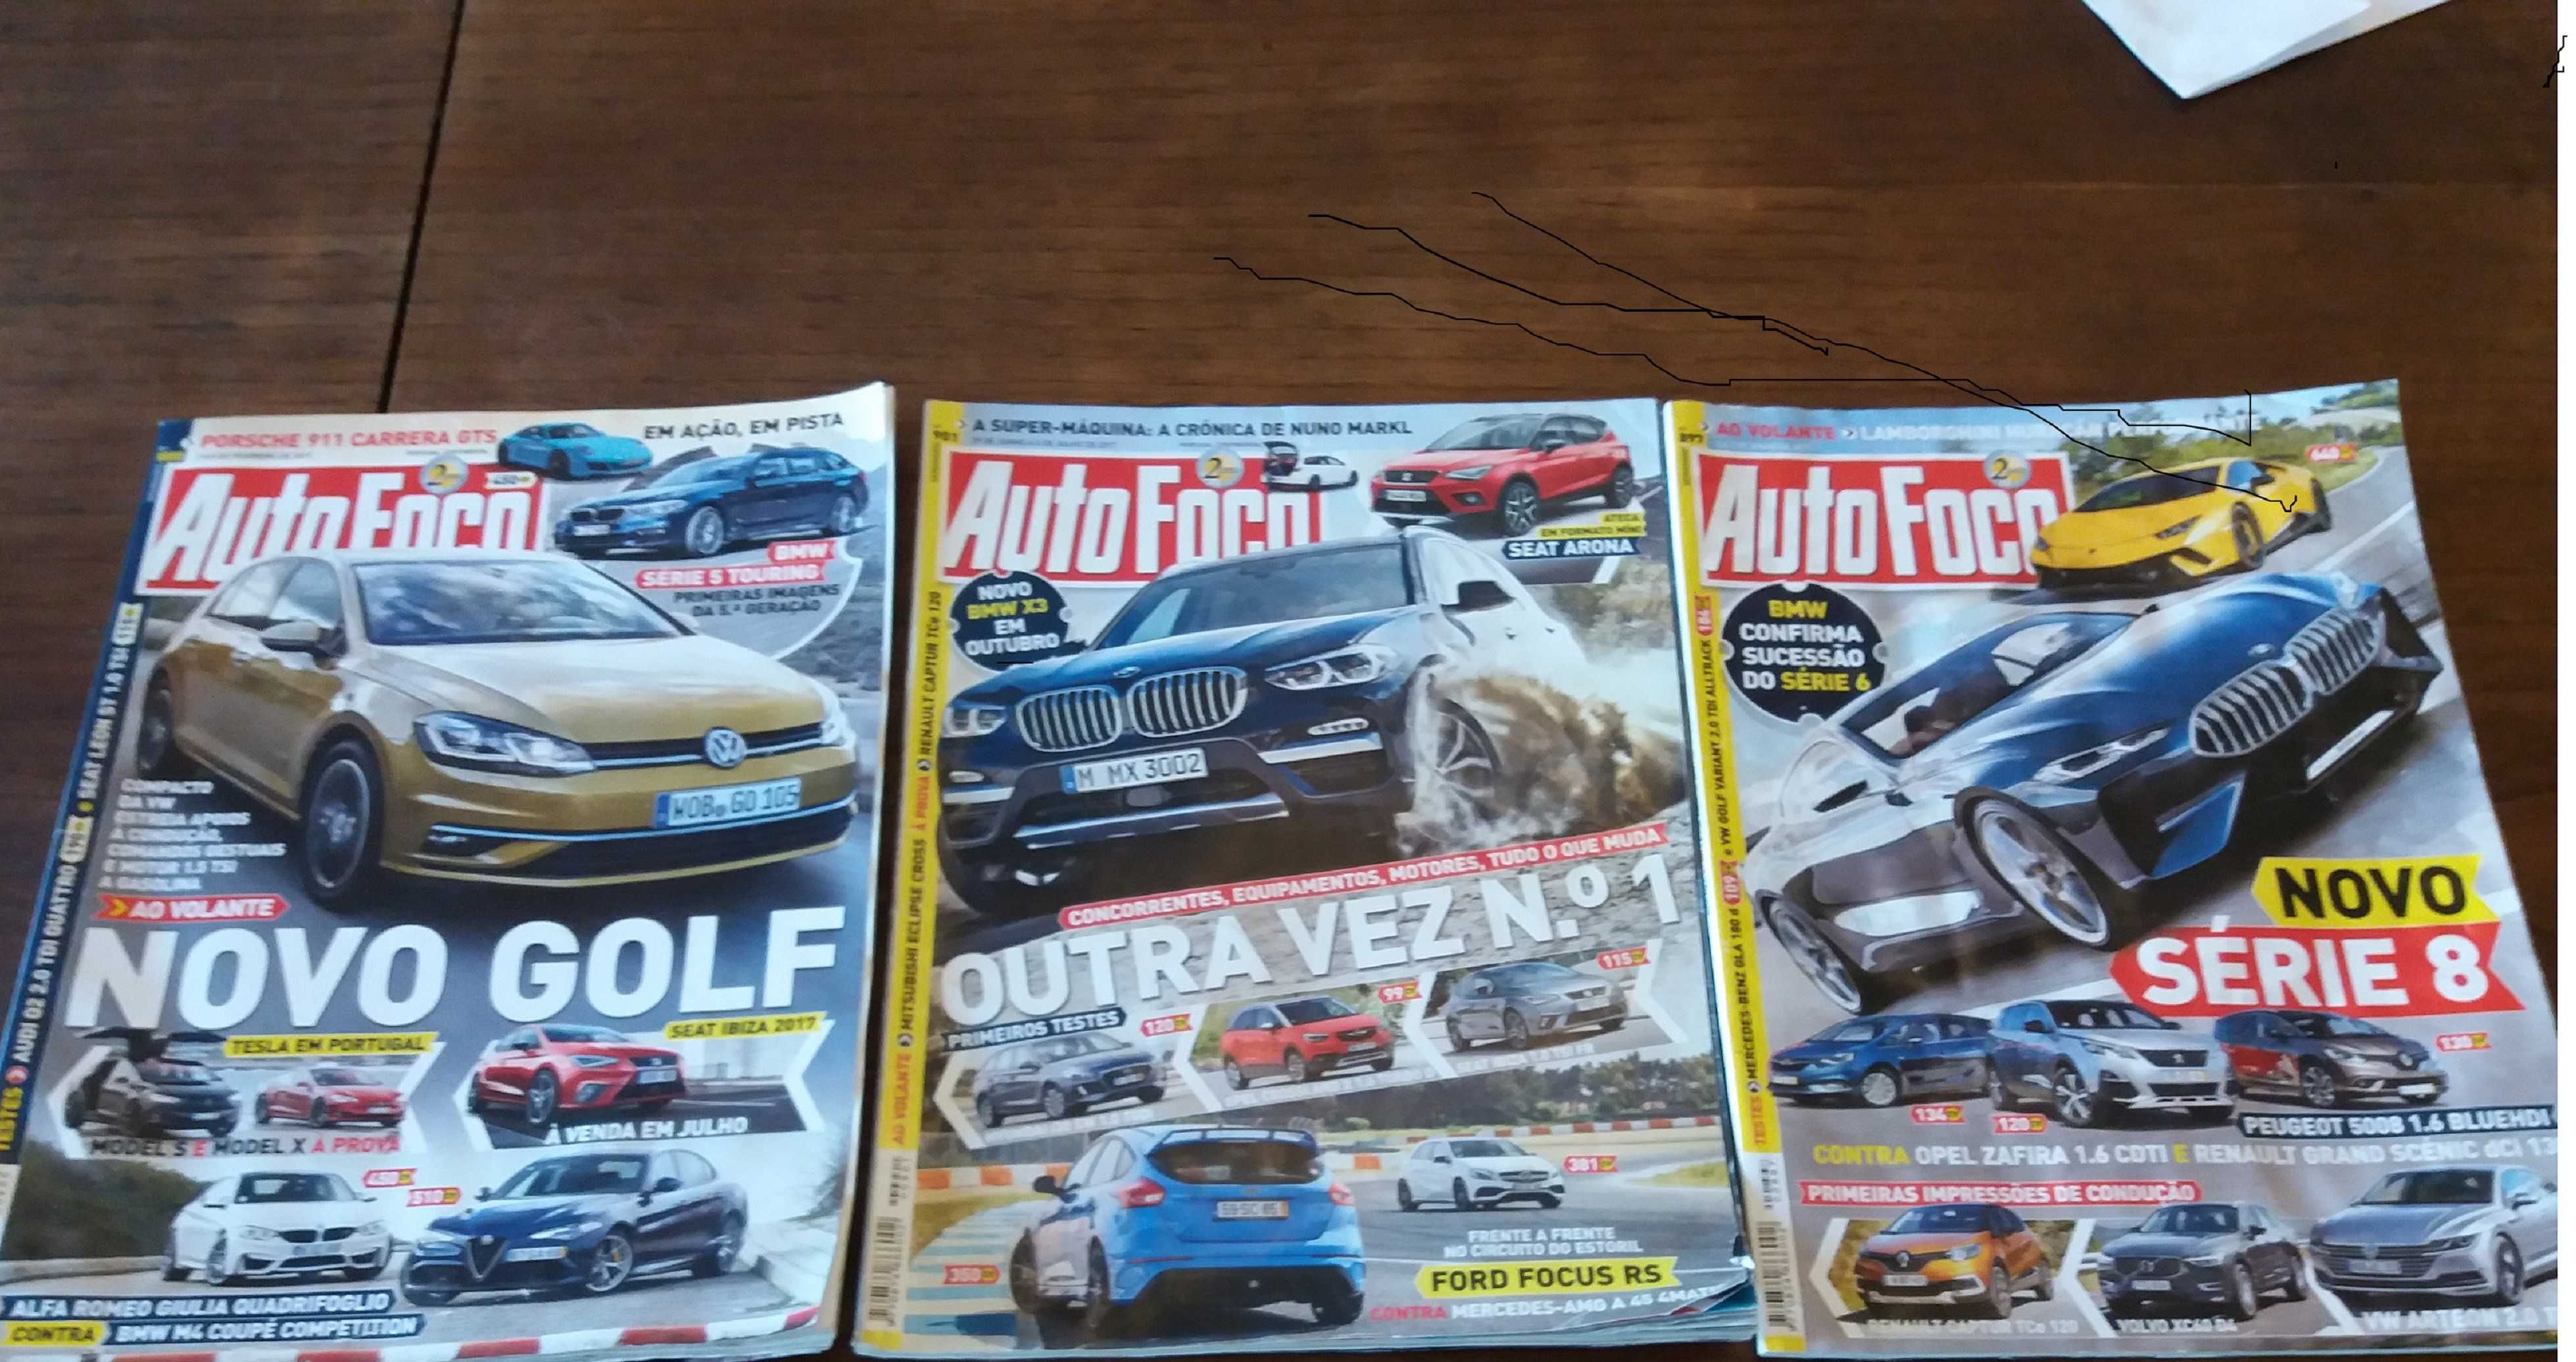 Revistas Técnicas do Automóvel e 32 Revistas AUTOFOCOS